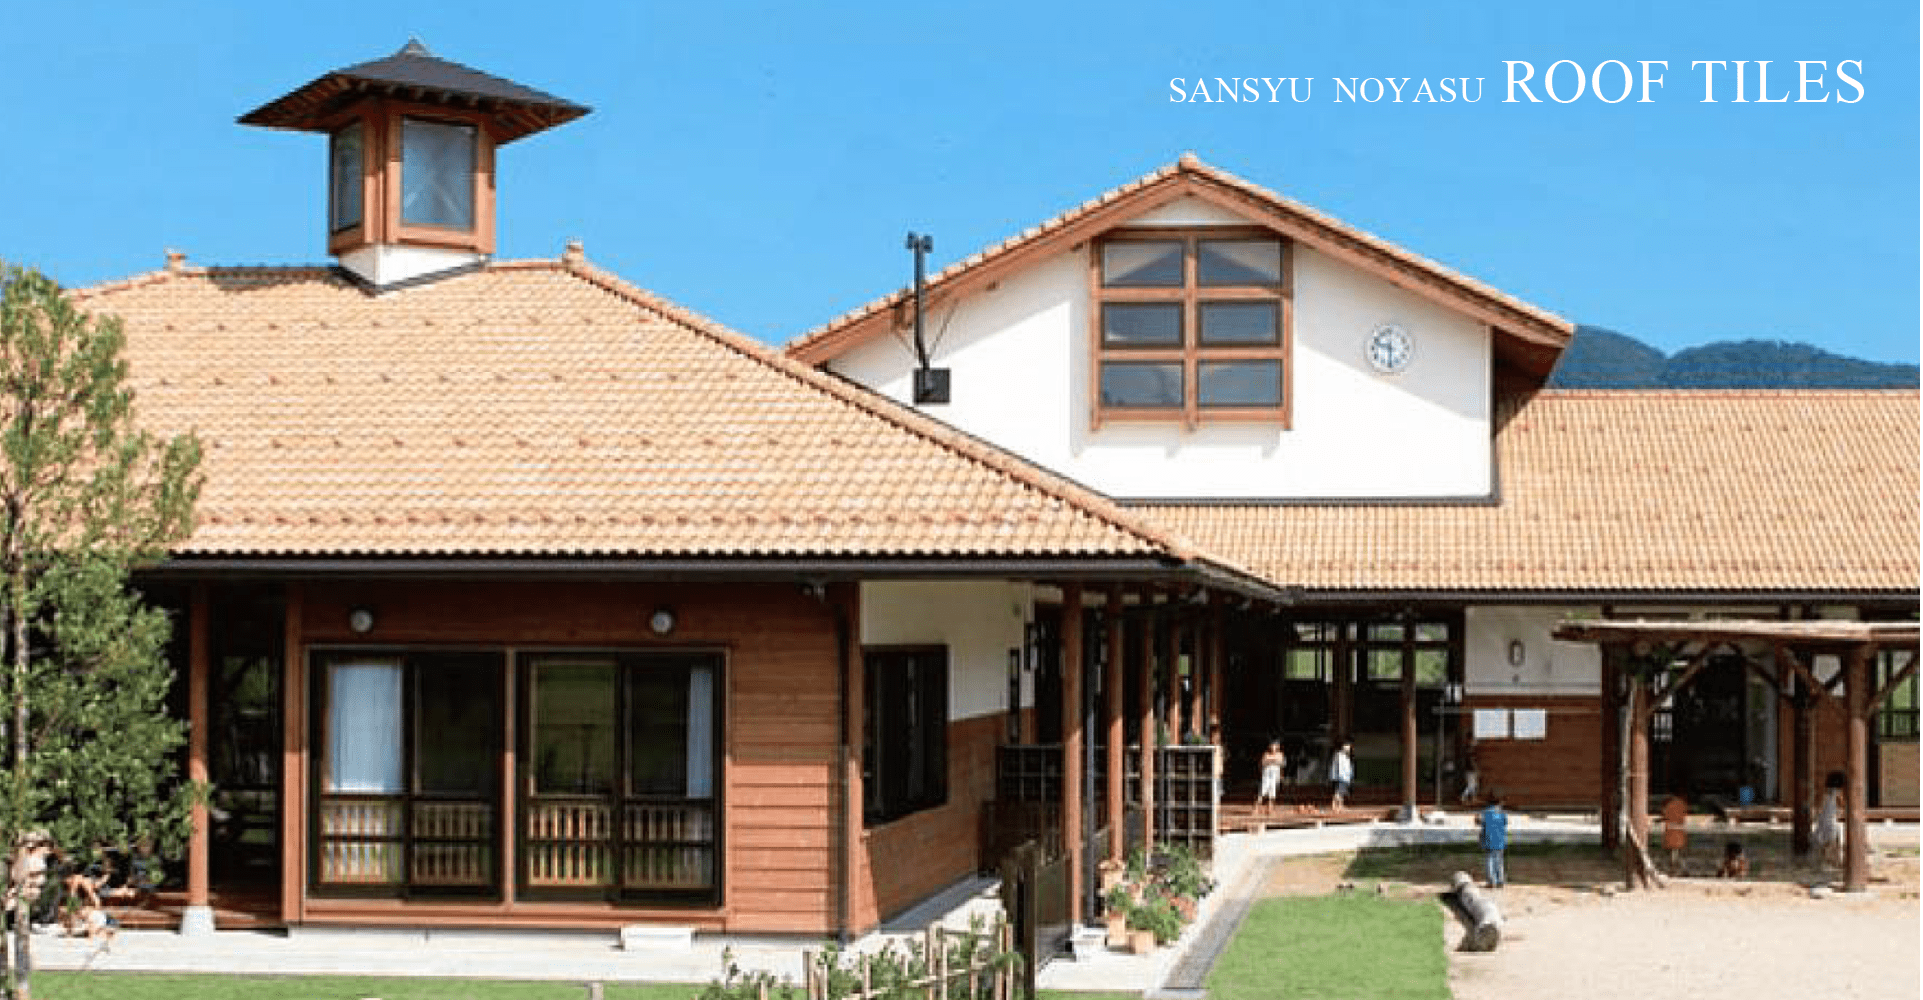 sansyu noyasu roof tiles